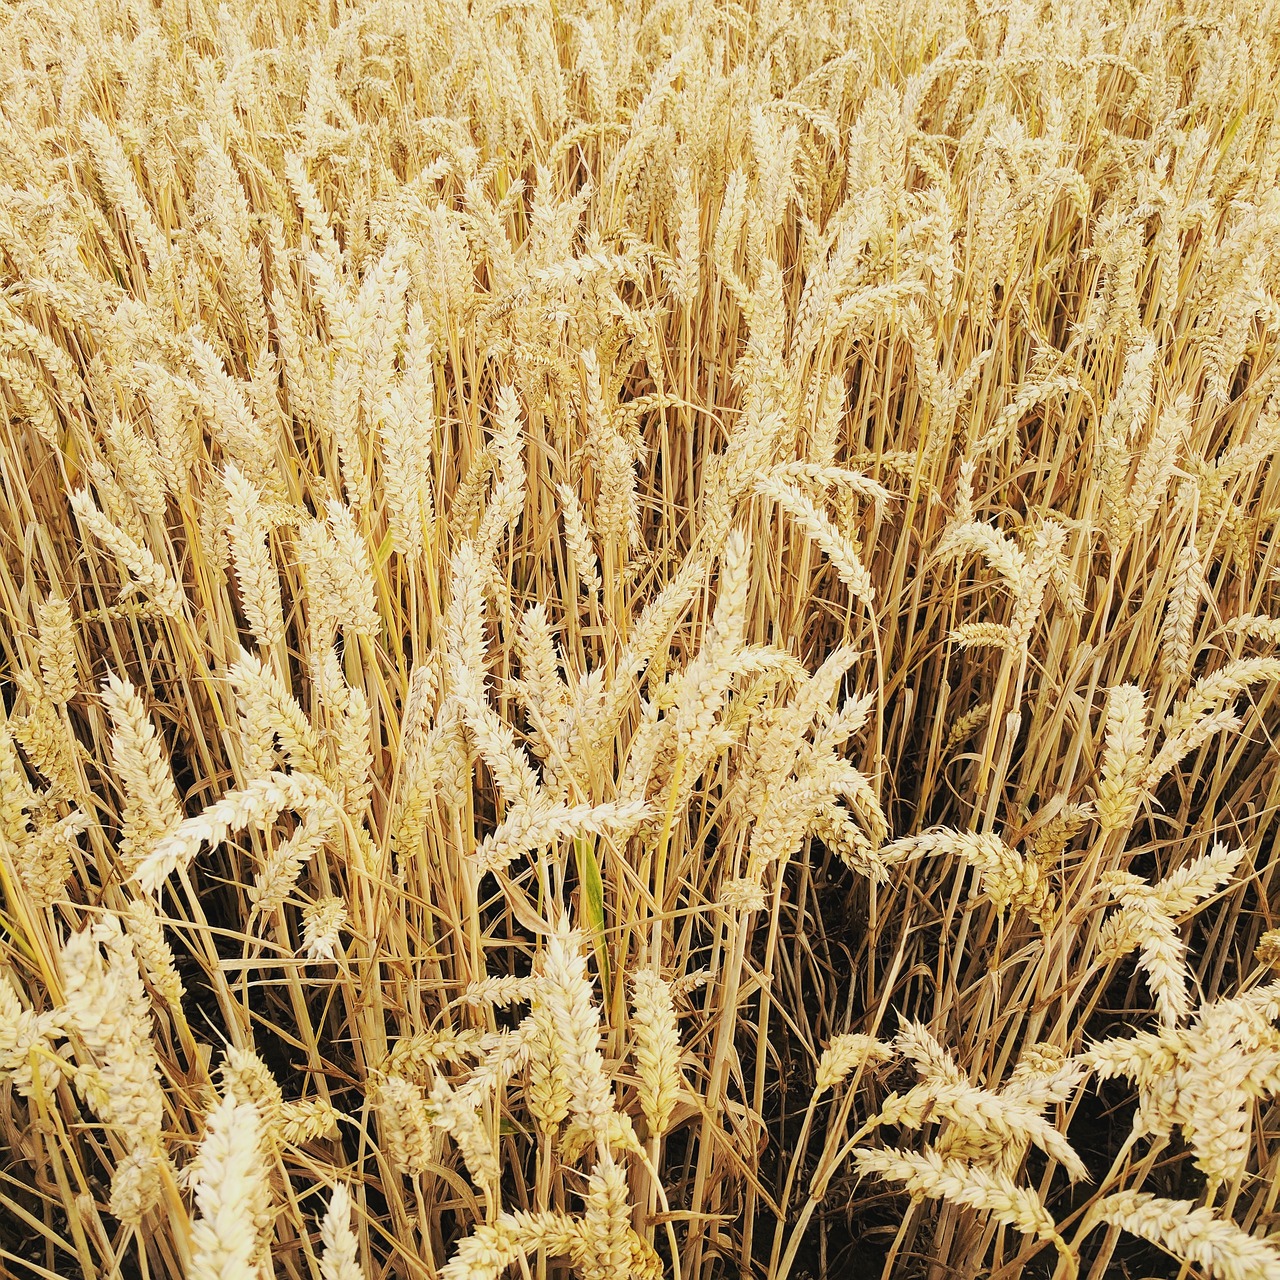 Пшеничные культуры. Поле пшеницы. Зерновые культуры. Зерновые культуры Италии. Пшеница на белом.